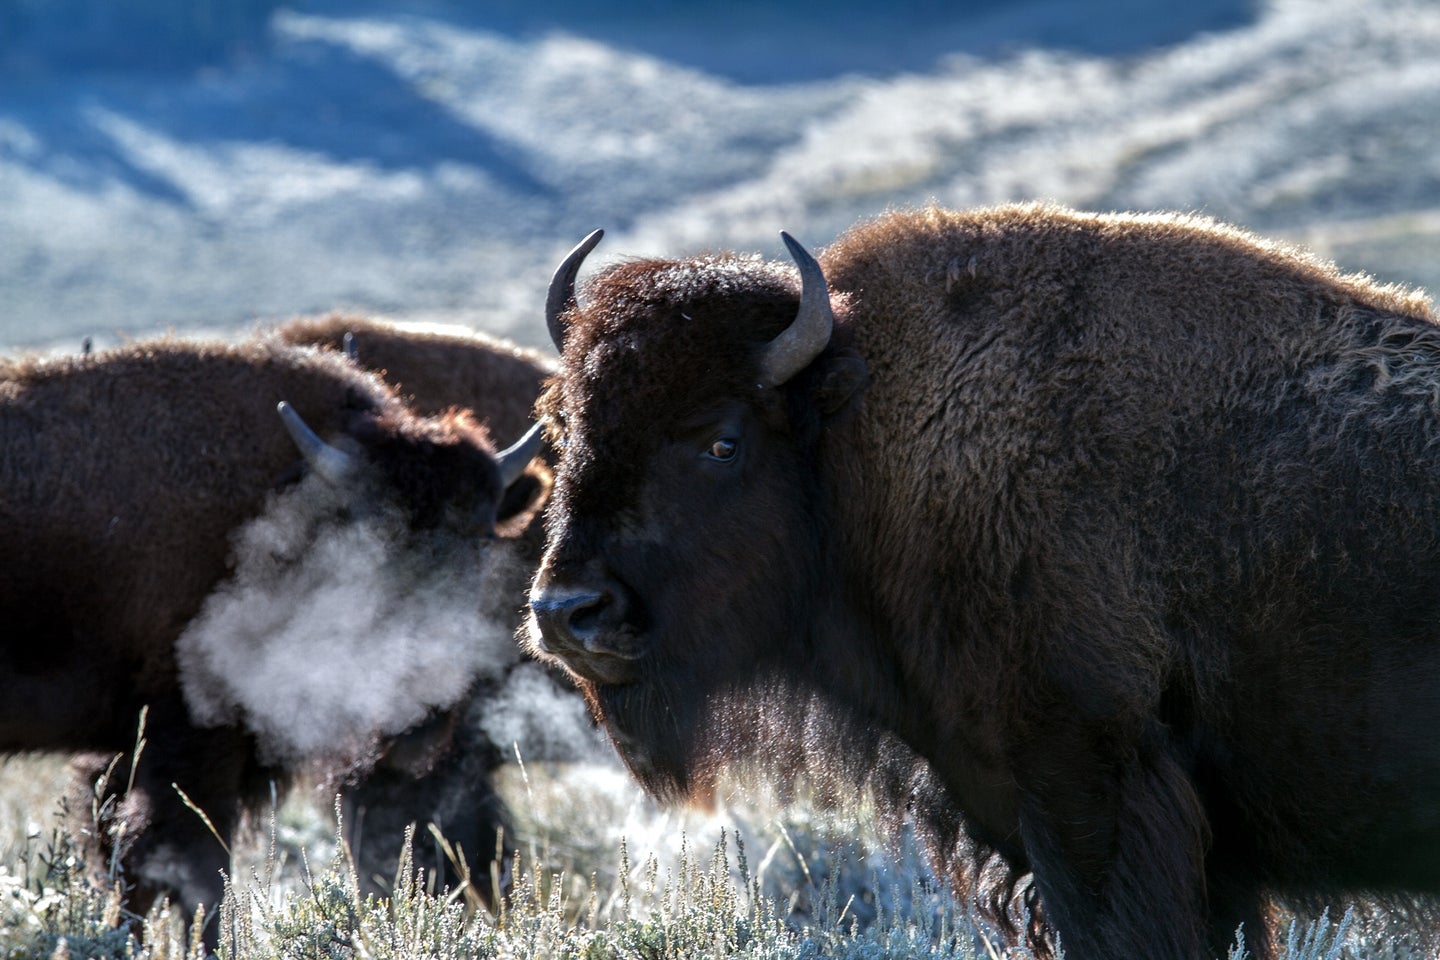 bison snorts air in snowy landscape